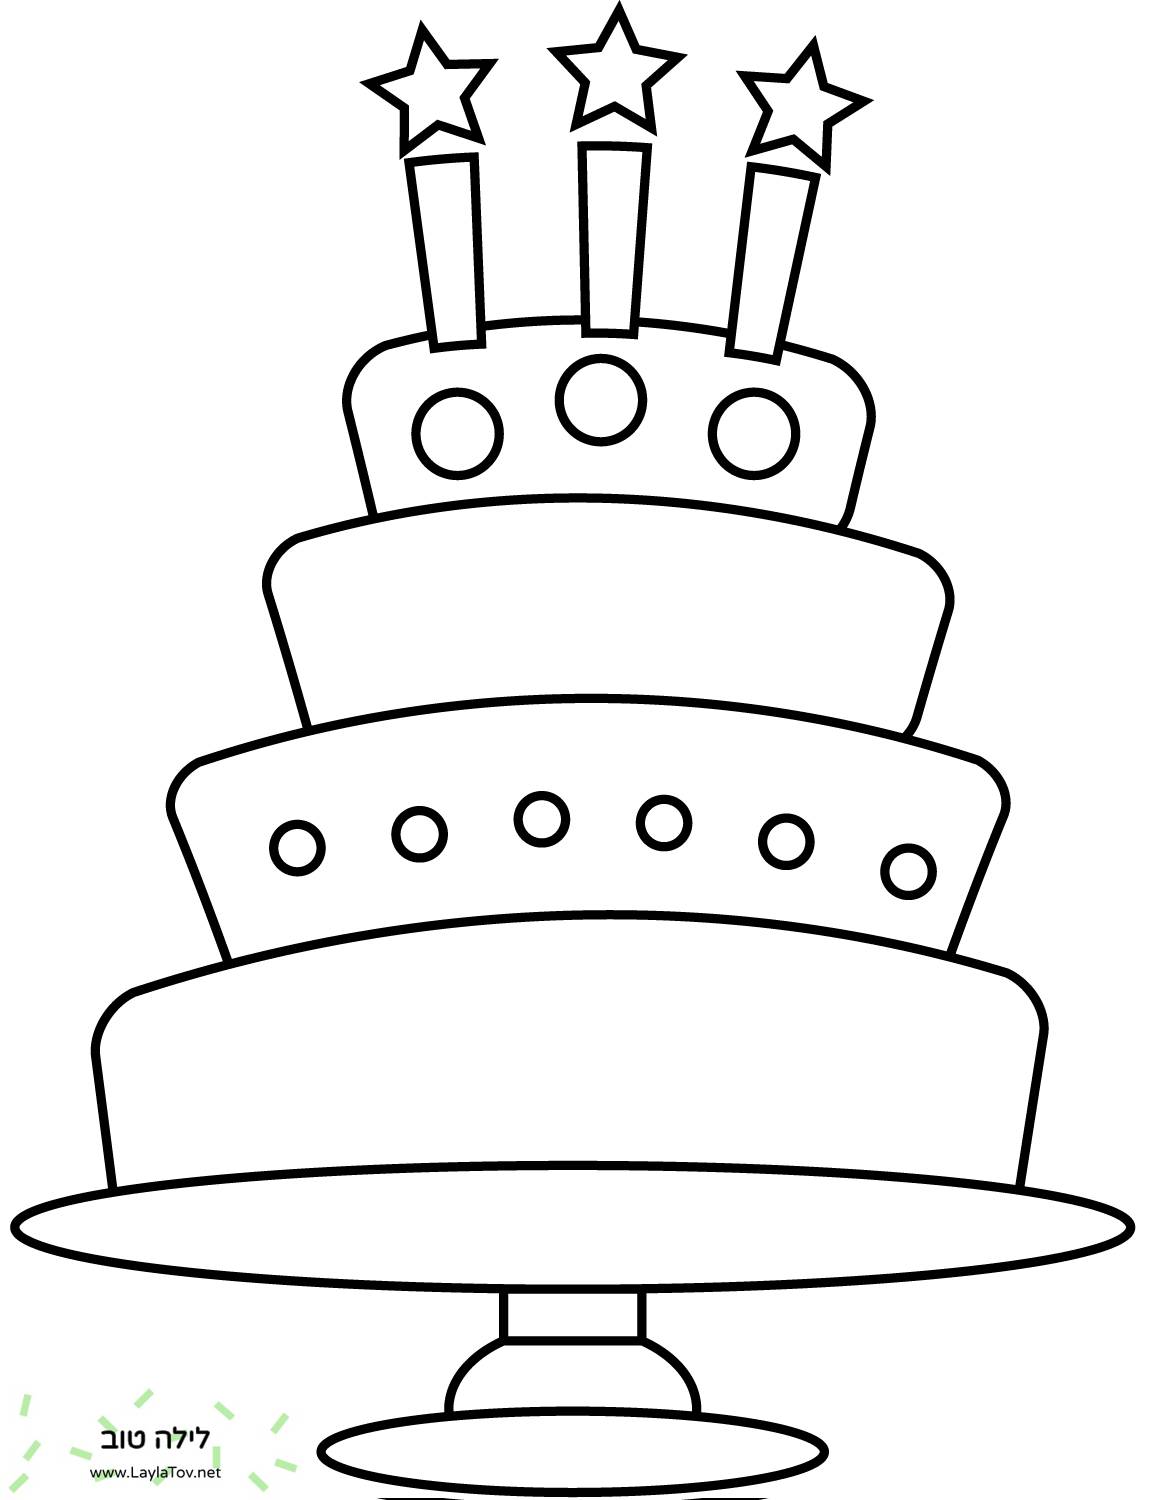 עוגת יום הולדת עם שלושה נרות